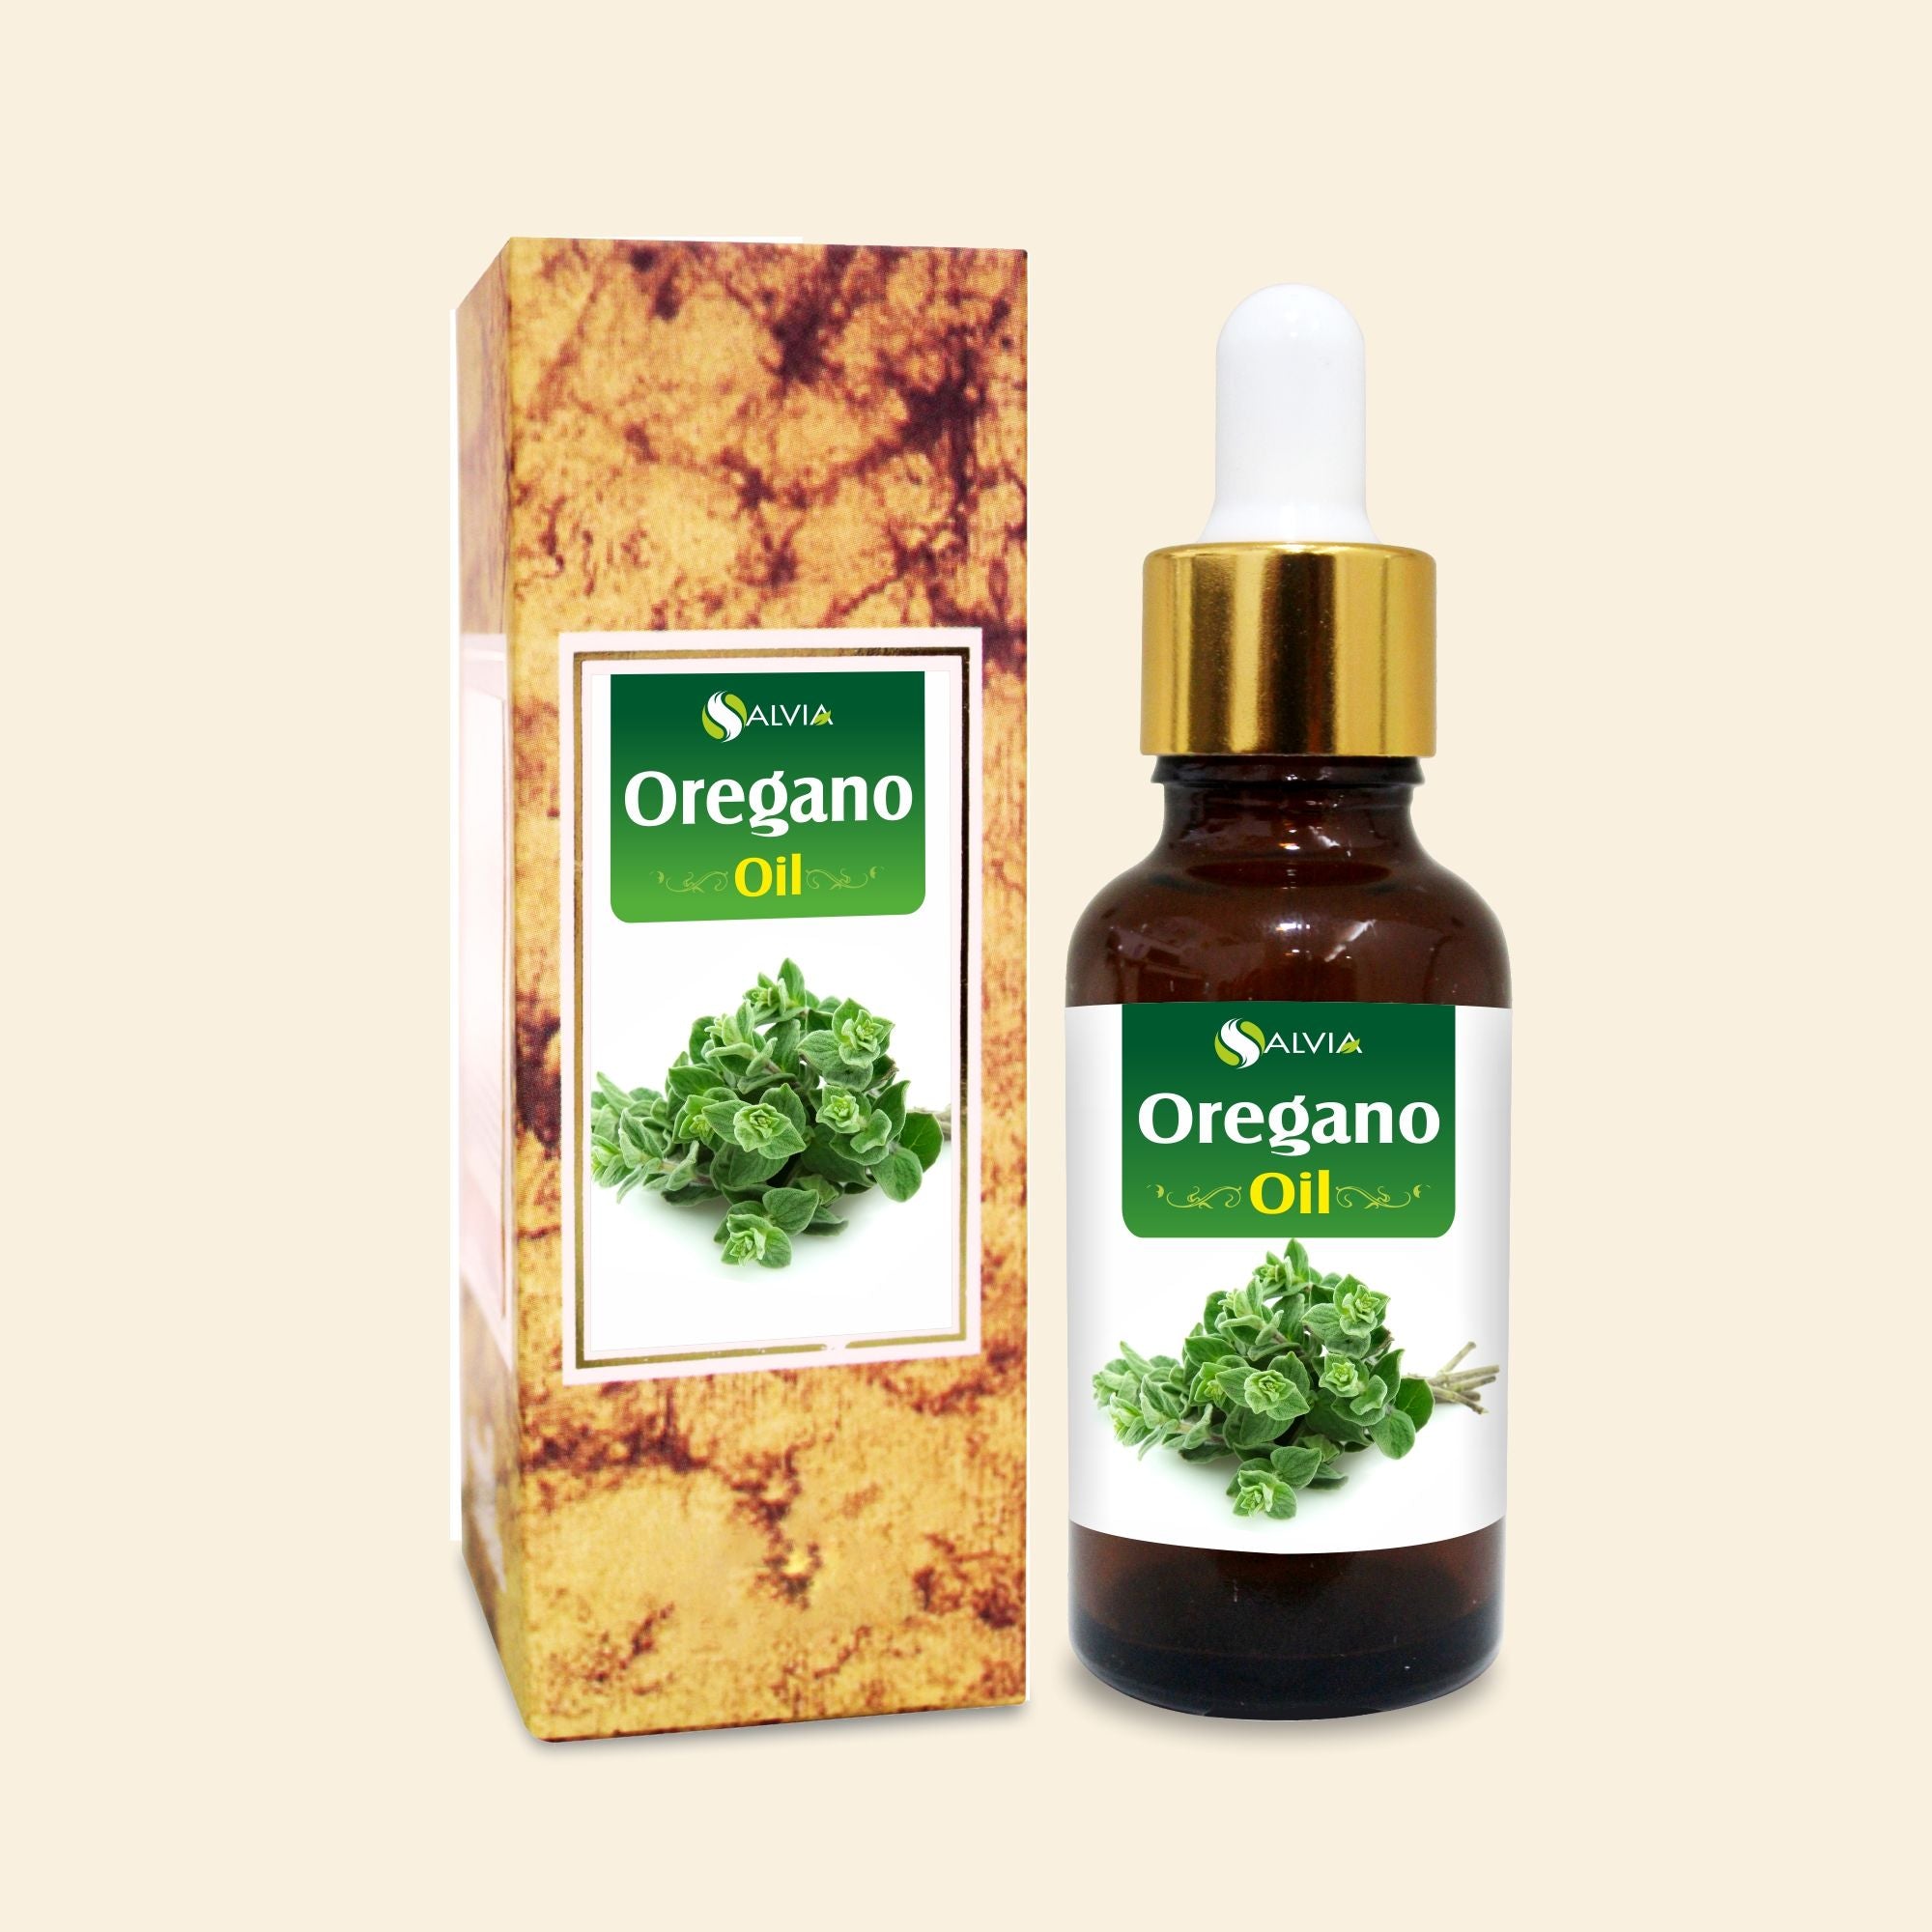 Salvia Natural Essential Oils Oregano Essential Oil (Origanum Vulgare) 100% Pure, Undiluted, Natural For Aromatherapy